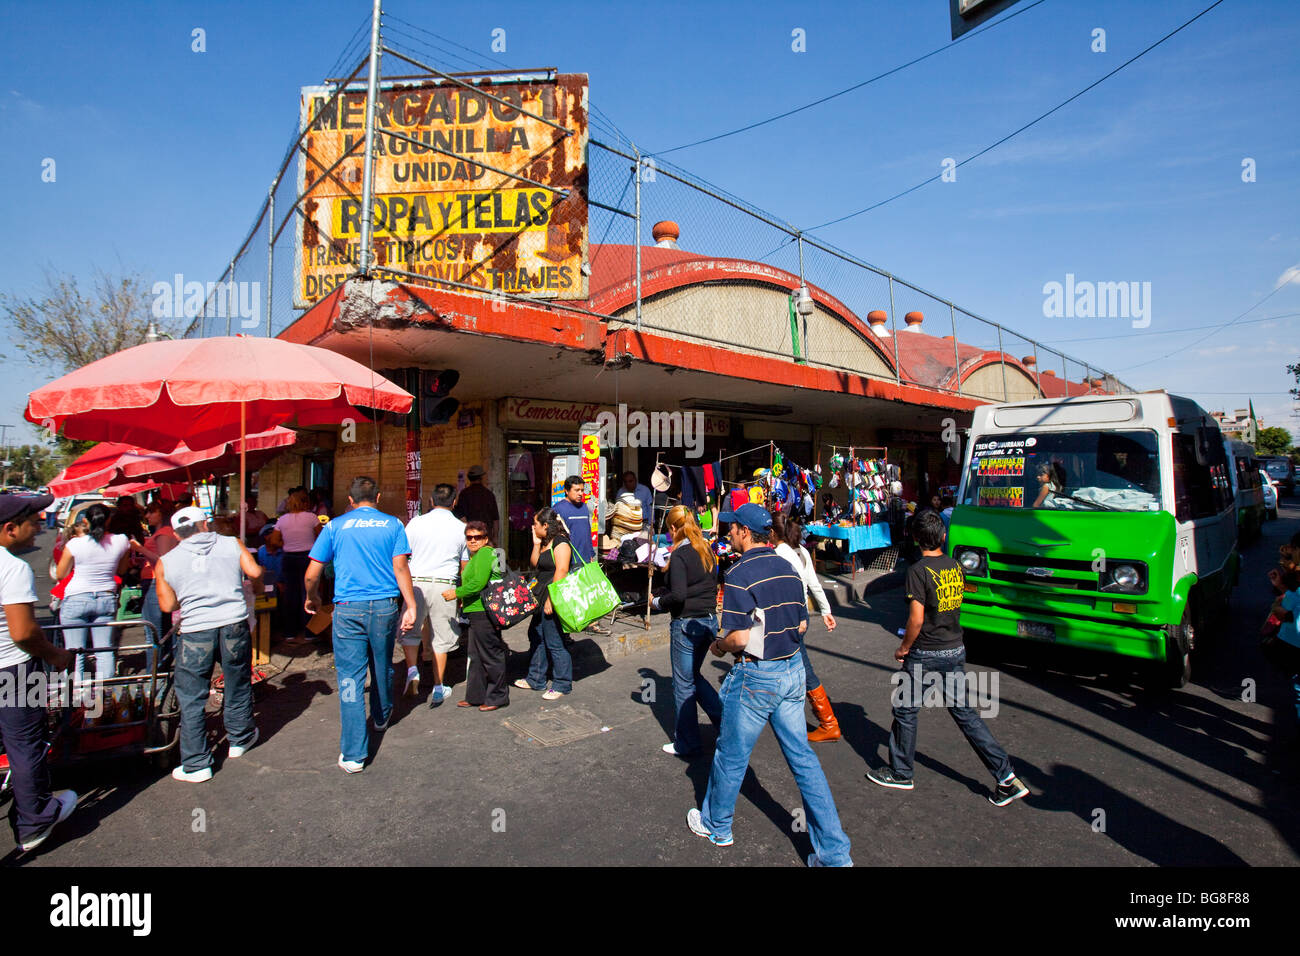 Mercado Lagunilla in Mexico City Stock Photo